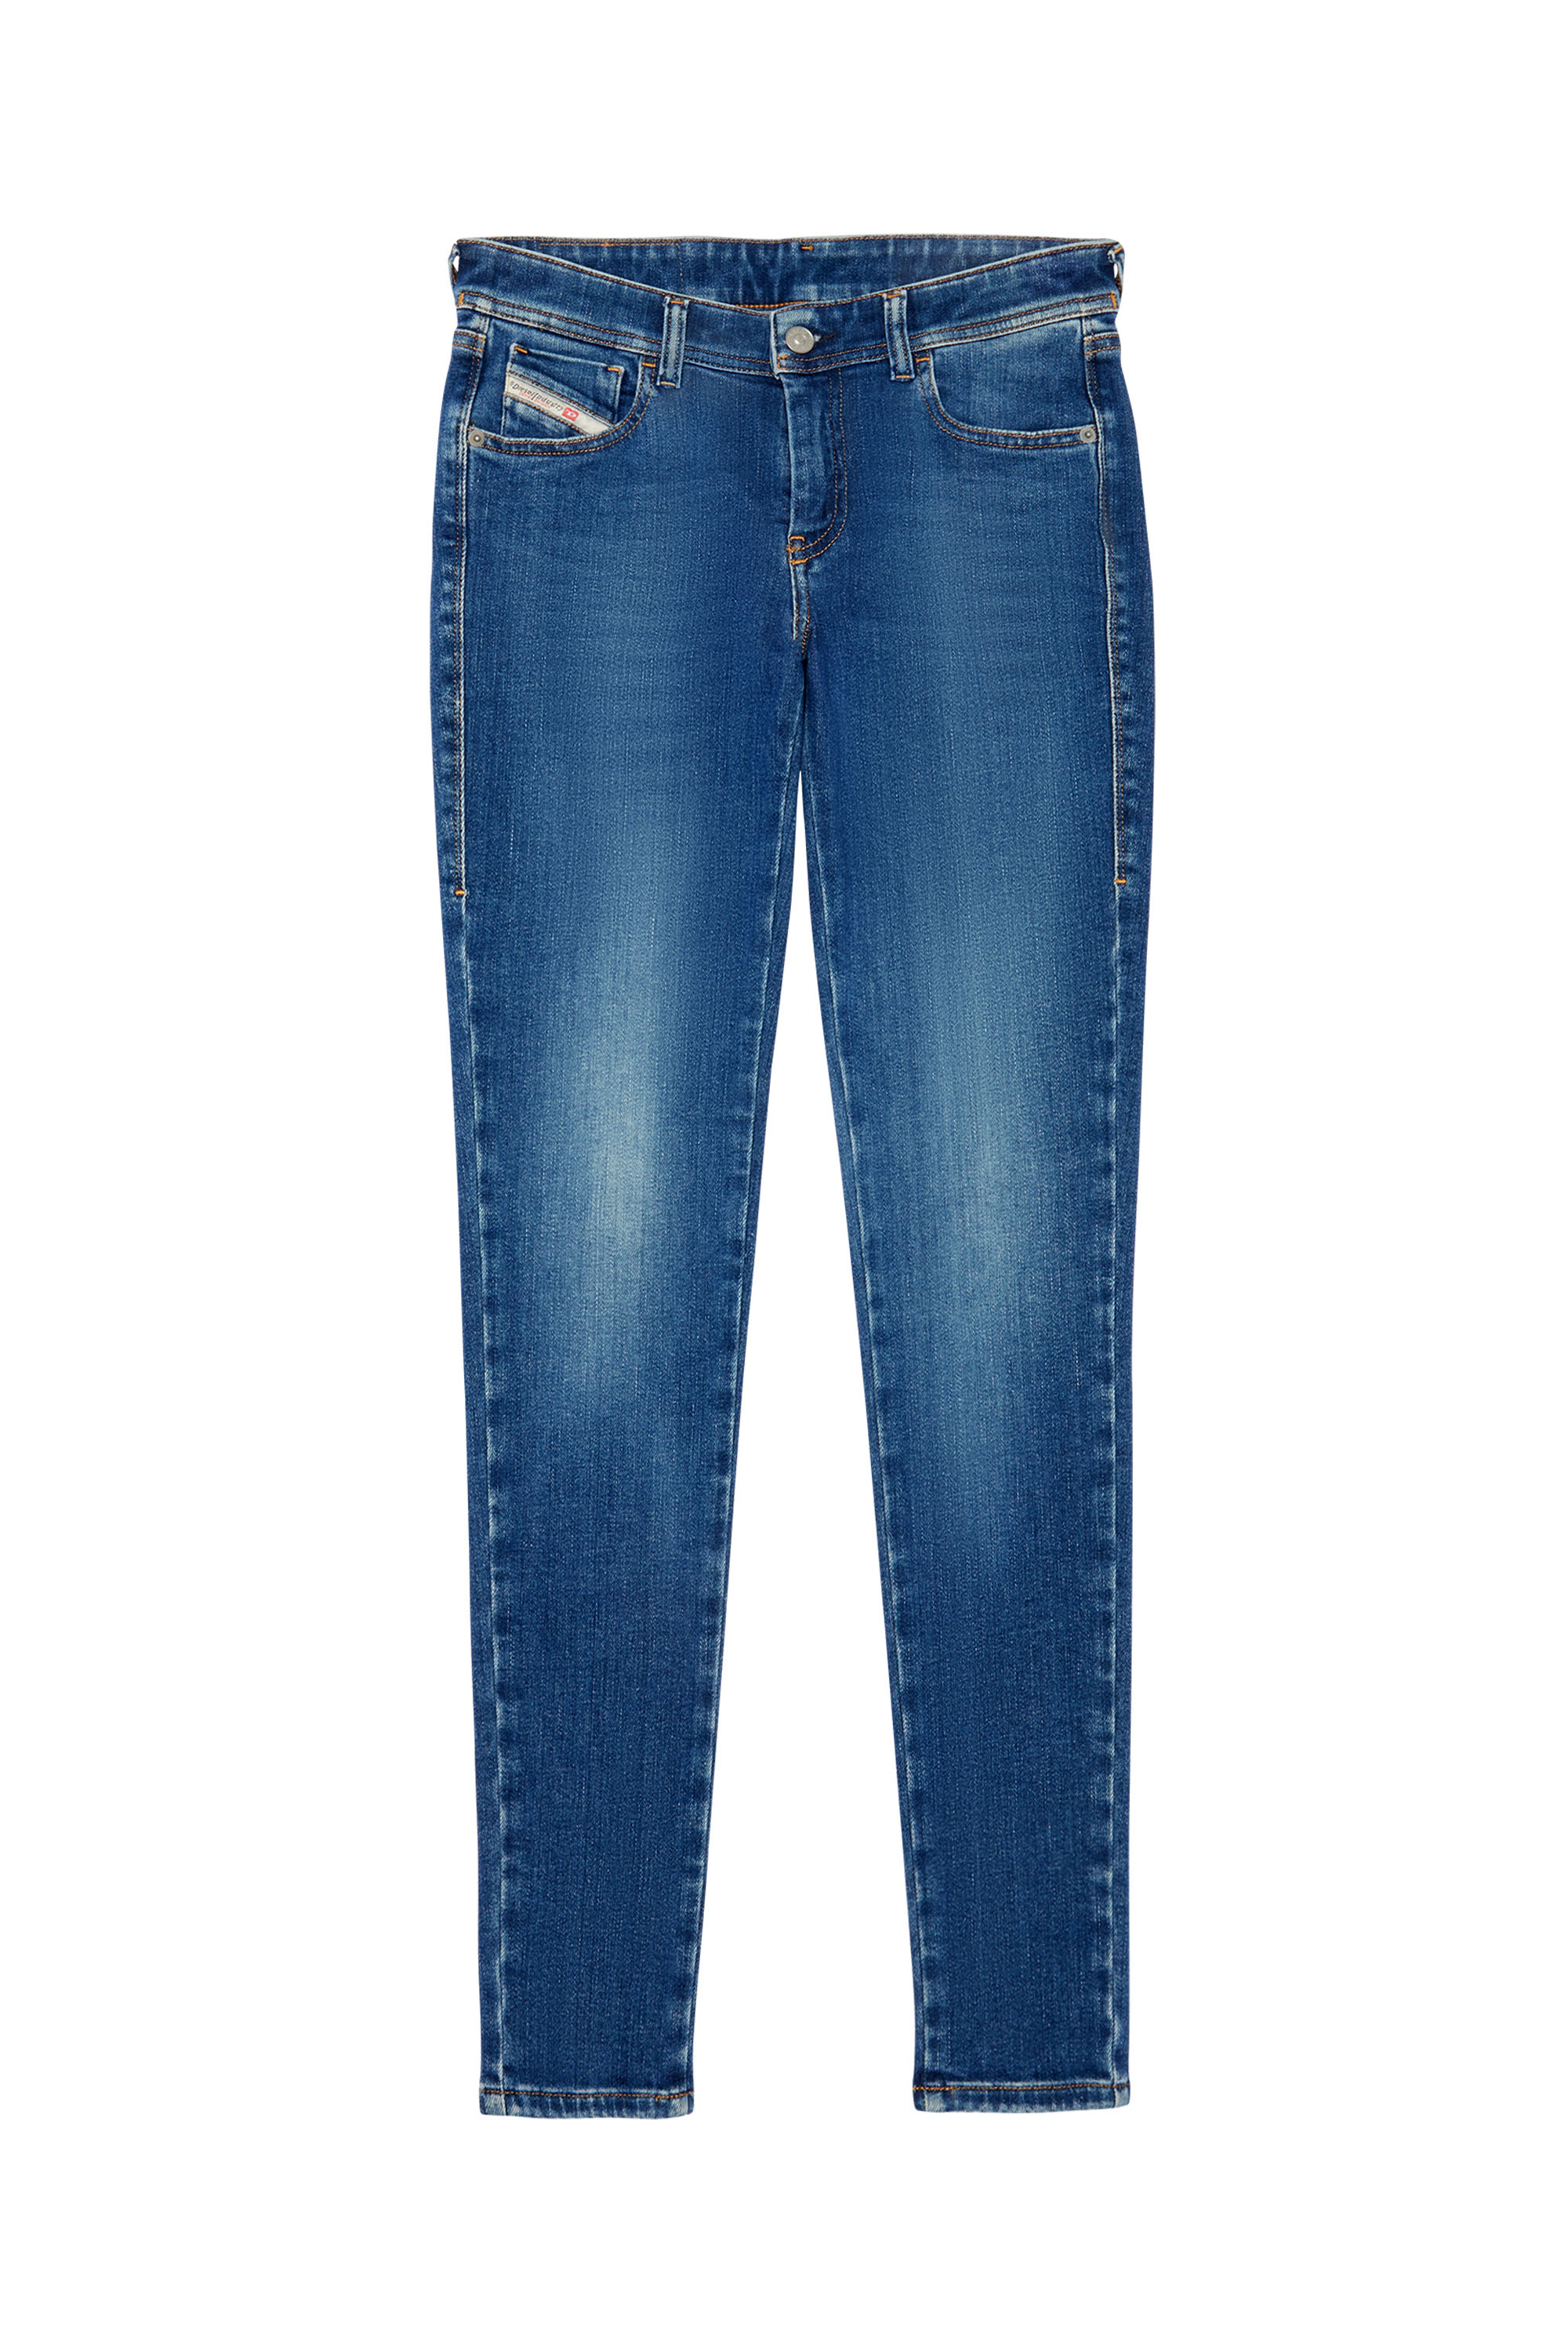 2018 SLANDY-LOW 09C21 Super skinny Jeans, Azul medio - Vaqueros